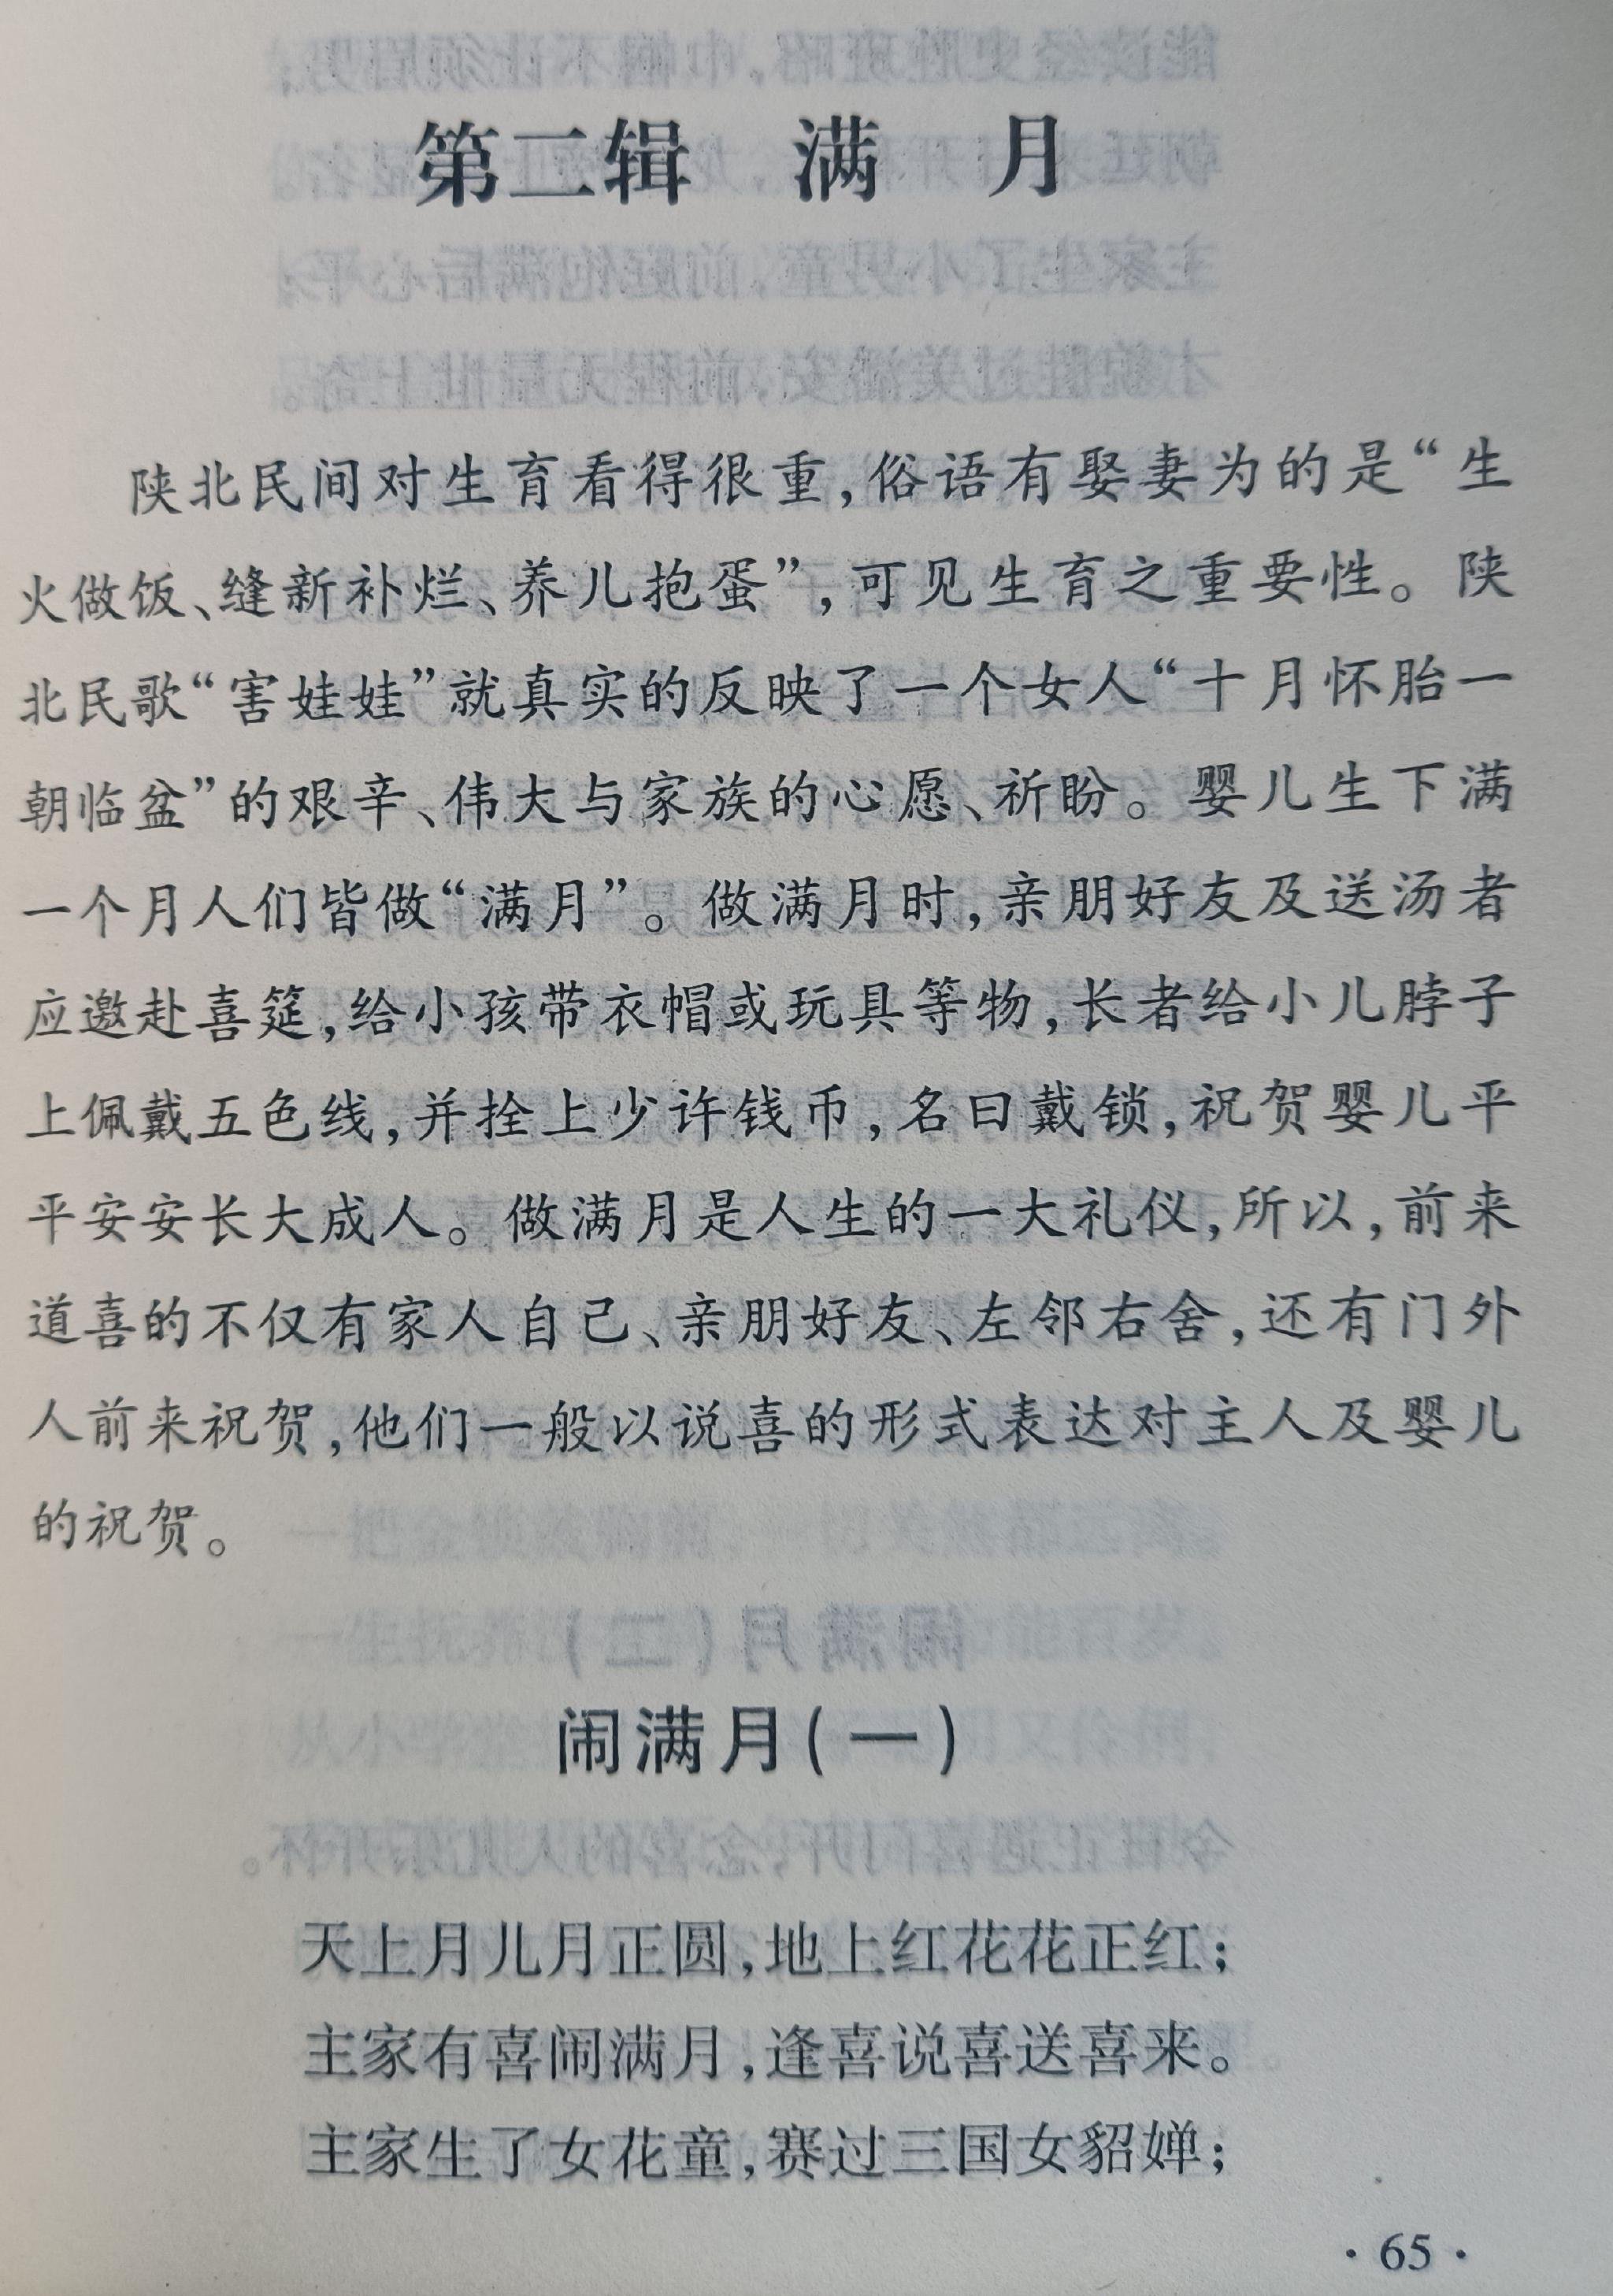  《陝北民俗歌謠精選》中的章節。